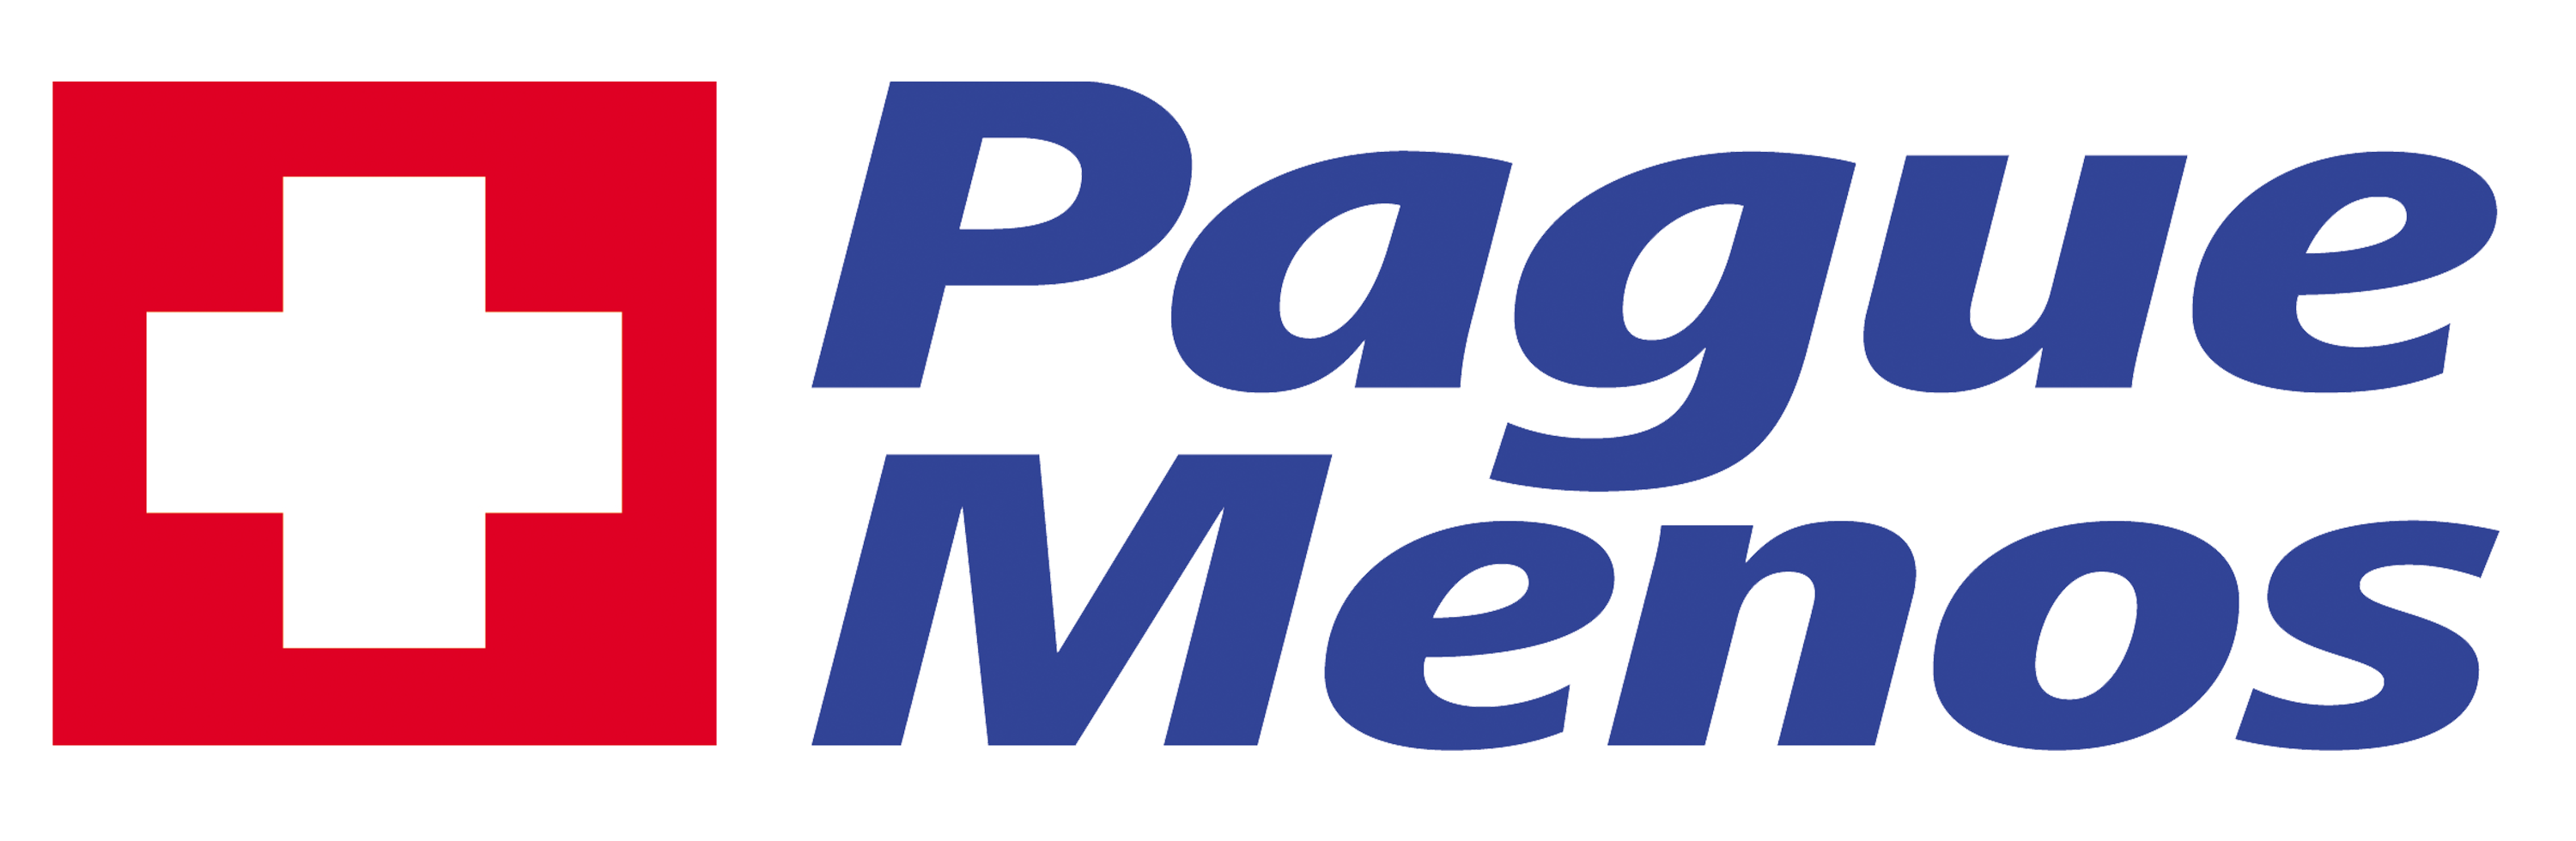 Farmacia Pague Menos - J Angelica BA